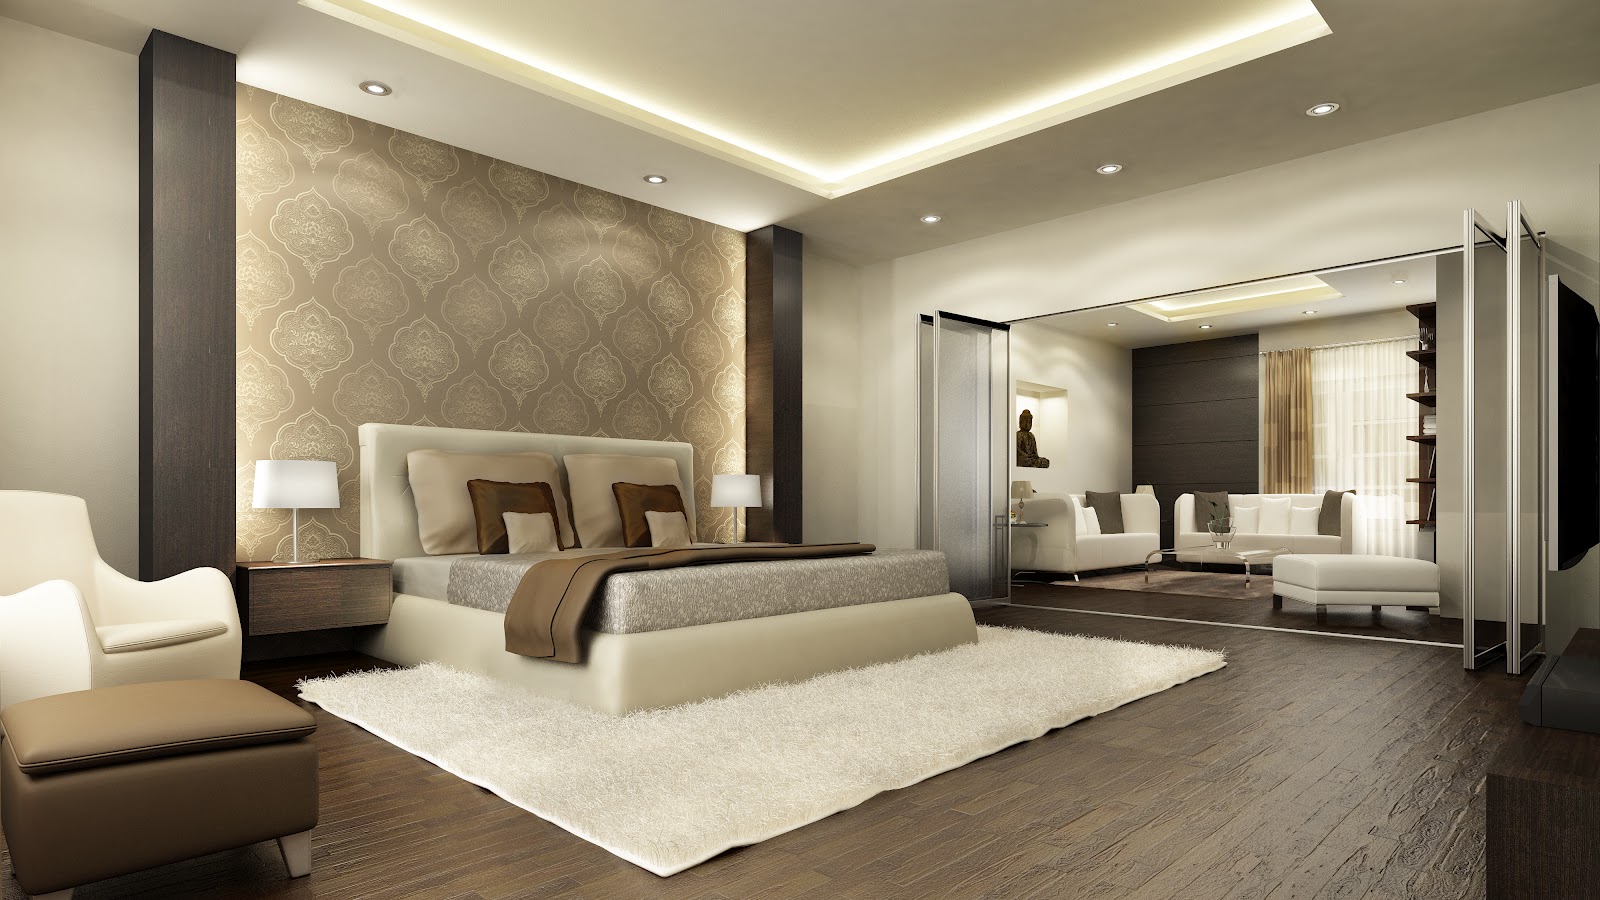 Wonderful Master Bedroom Design For Home Decor Idea With Master Bedroom Design